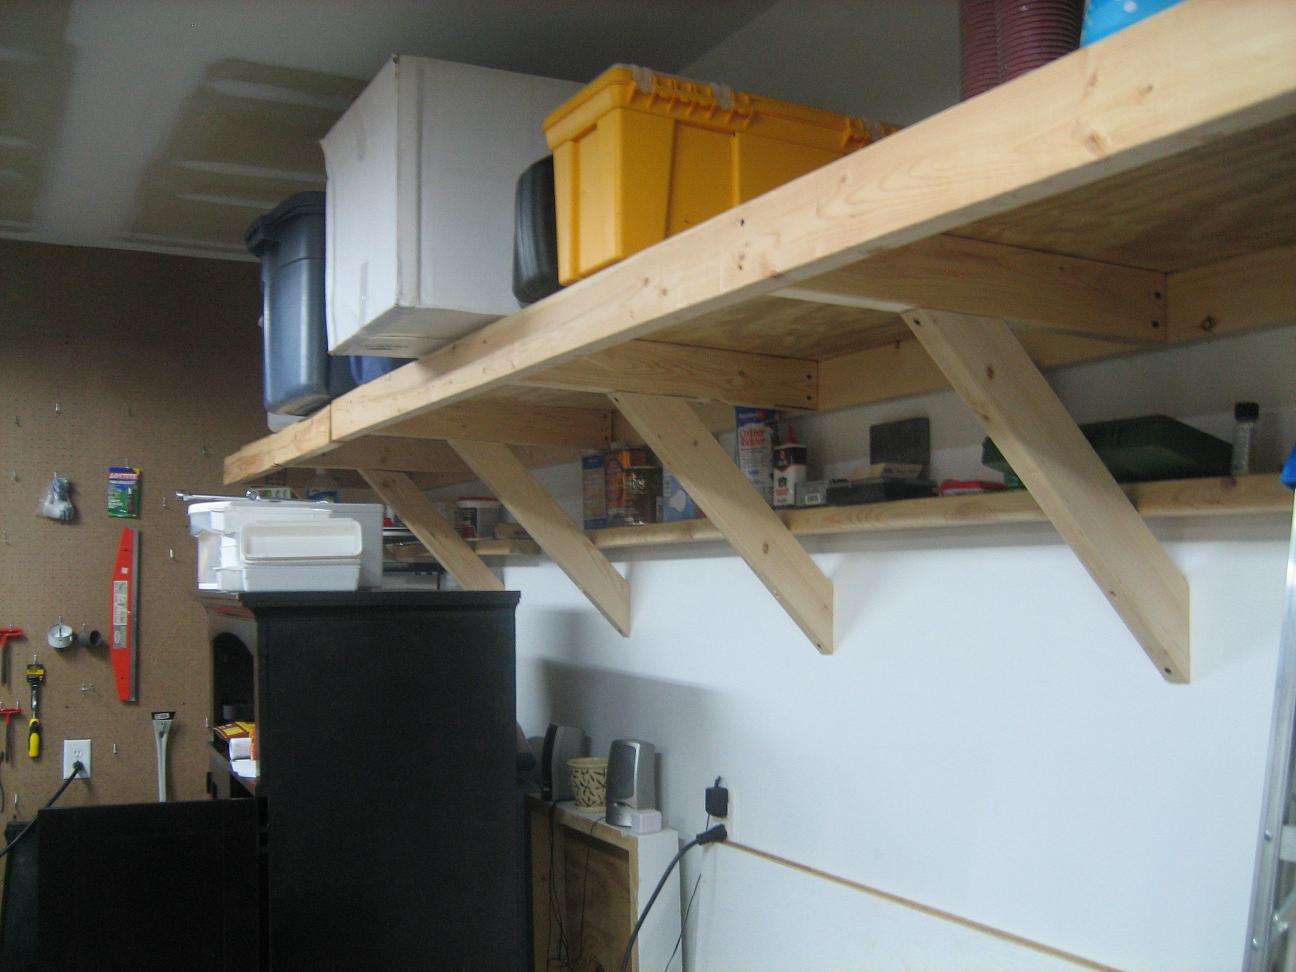 Building Garage Shelves